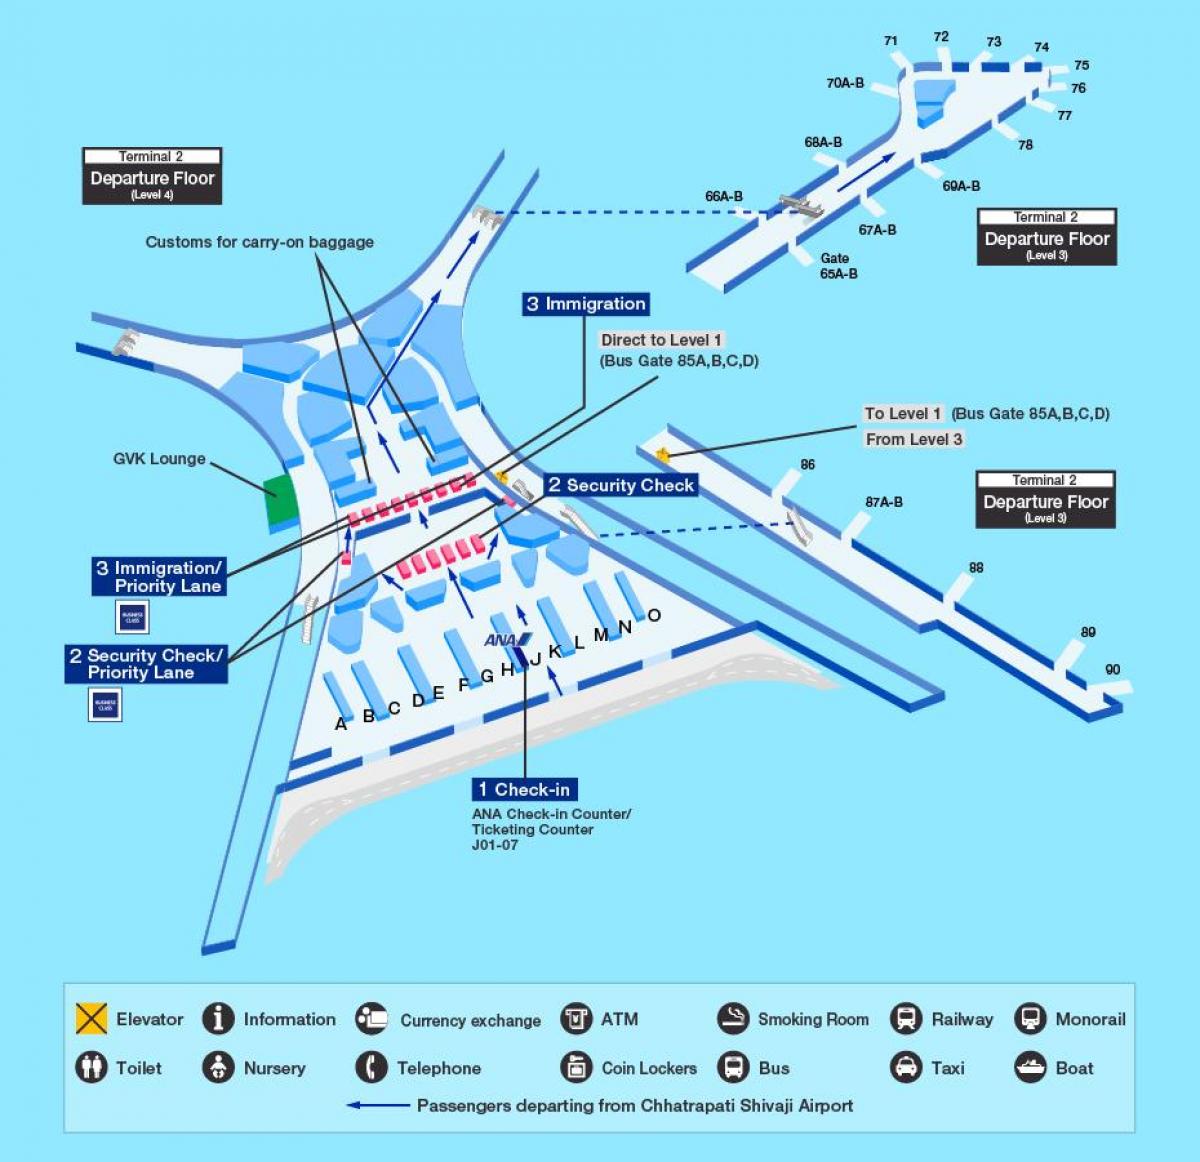 Mumbai aeroporto internacional terminal 2 mapa